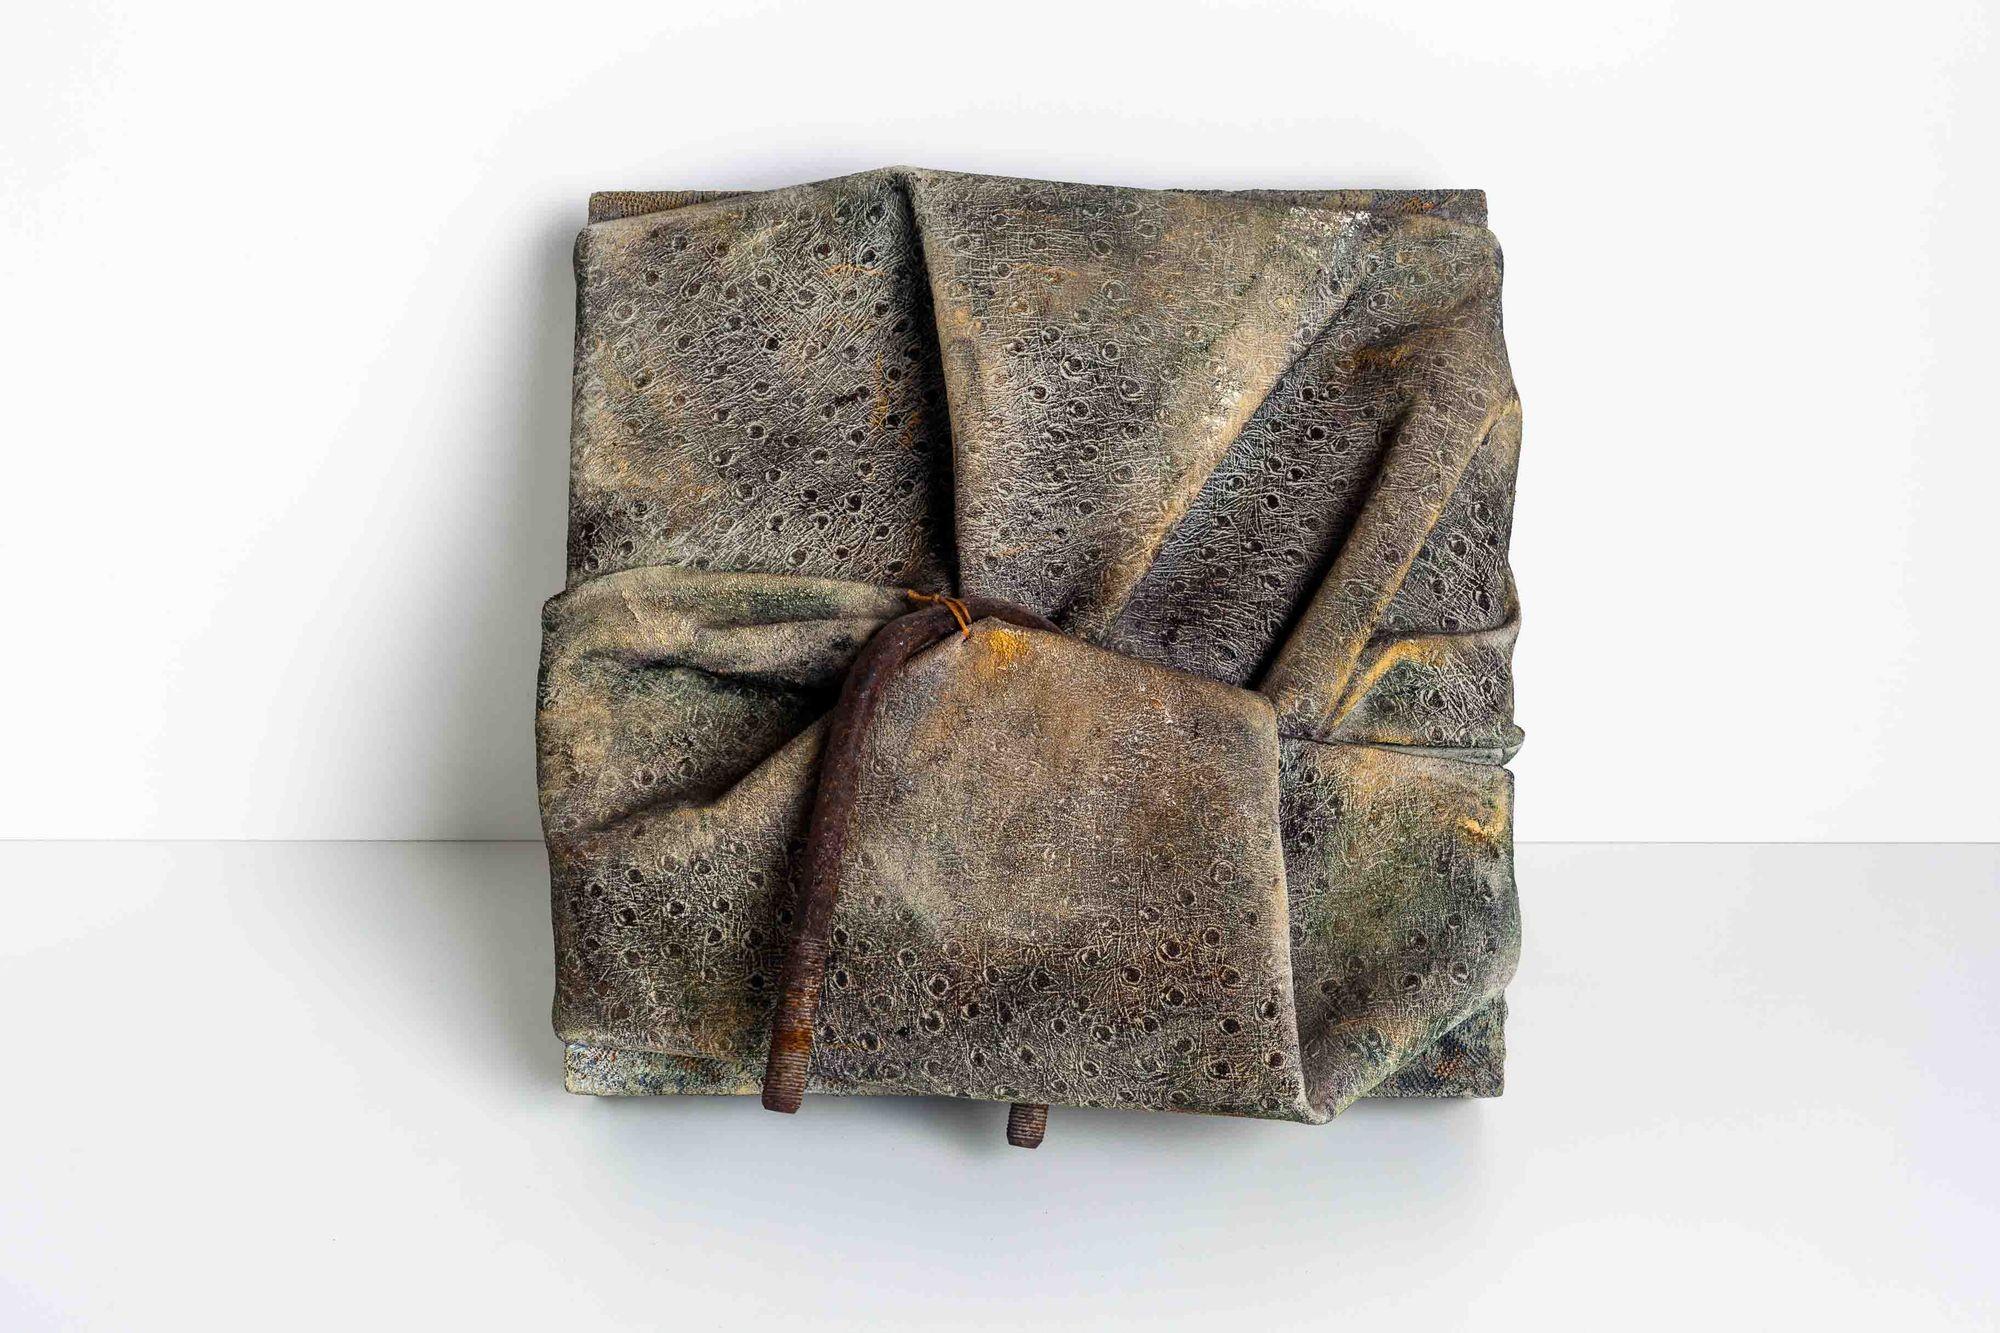 Diane Cooper Mixed Media über Holz Wand montiert Bundle Sculpture, von Ruth Horwich Collection'S.
Texturen Segeltuch und Metall
Über Diane Cooper:
Inspiriert von der visuellen Kultur Japans, verwendet Diane Cooper subtil gealterte und abgenutzte